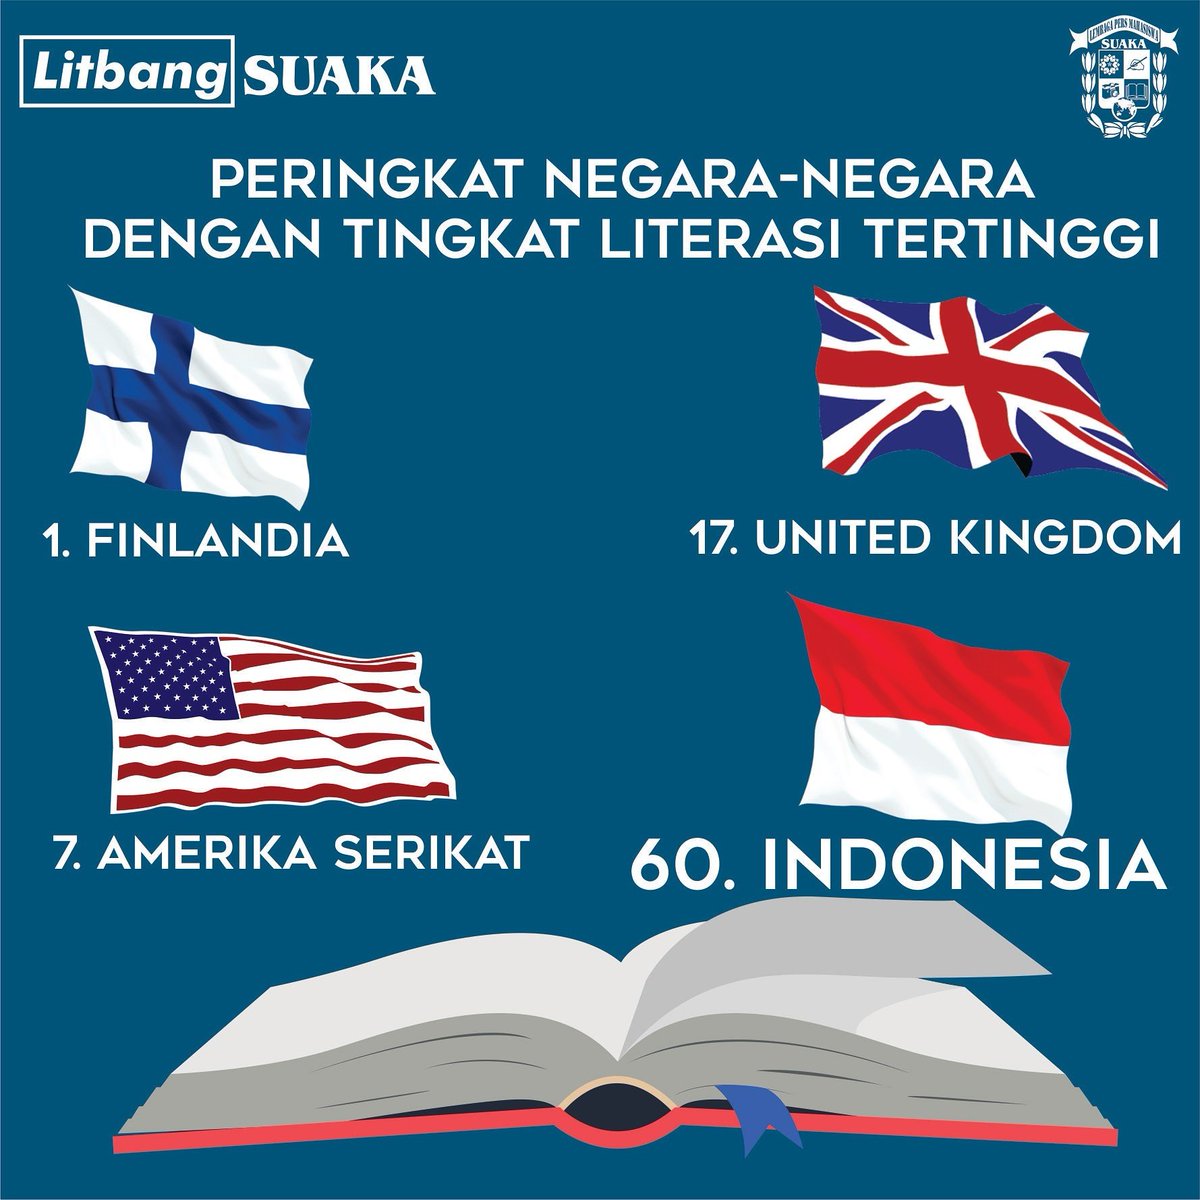 Indonesia menempati ranking 60 dari 61 negara dalam hal literasi dan membaca